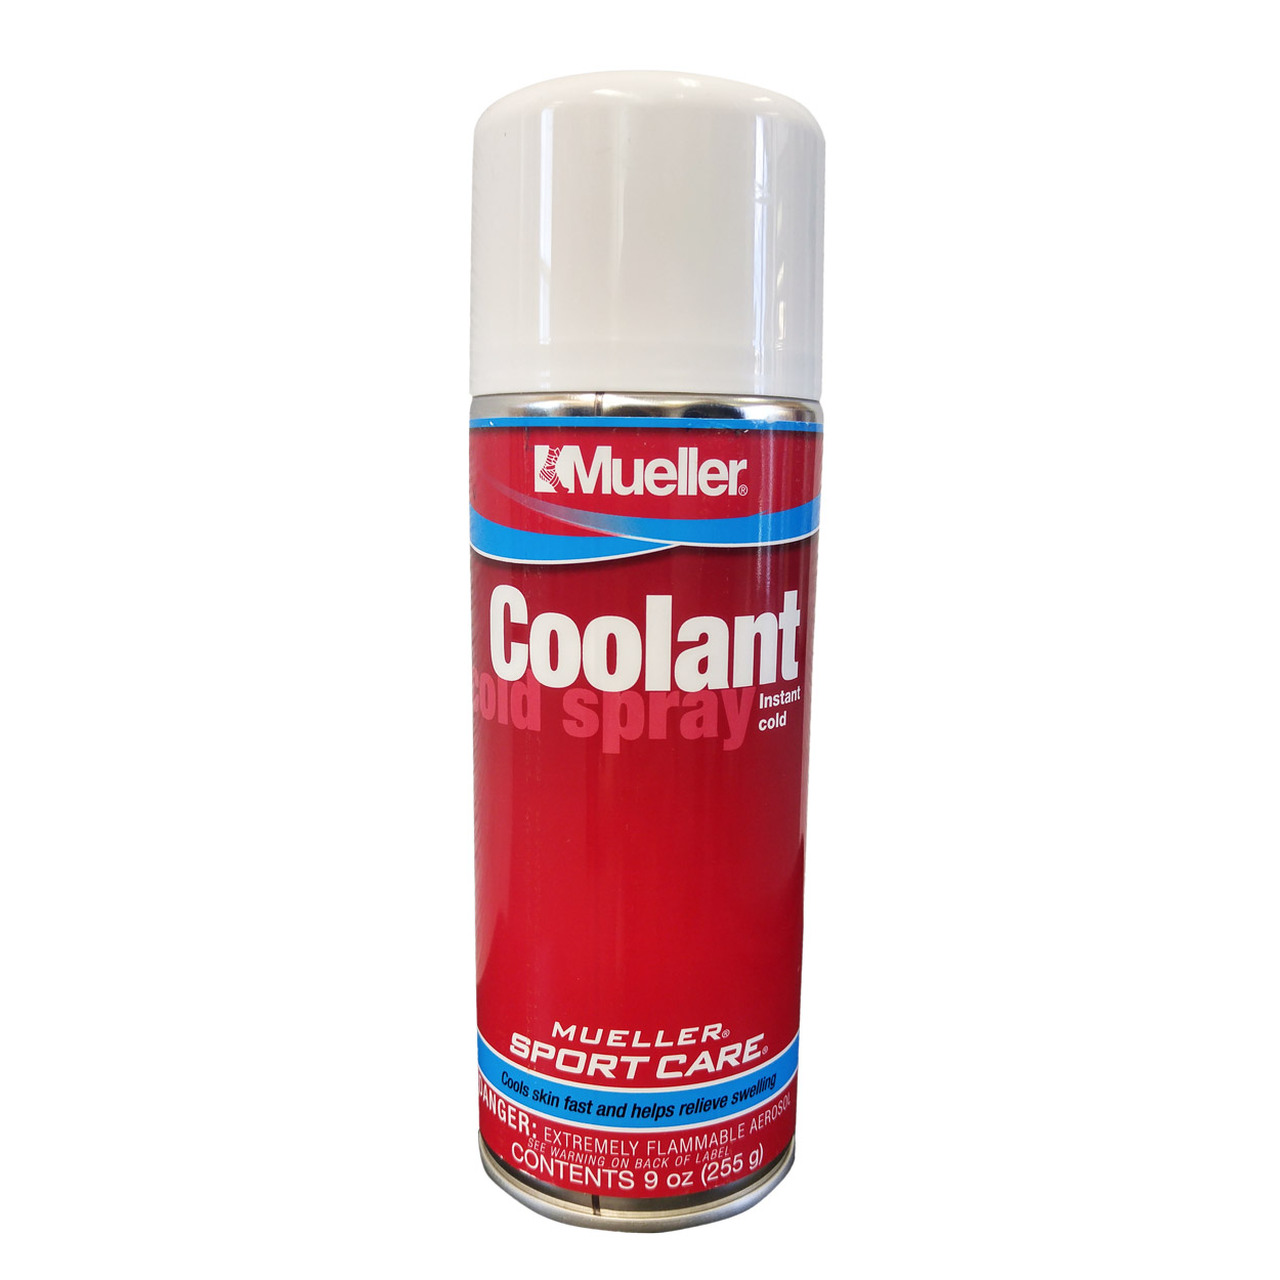 Coolant spray (cold spray) 3.5oz